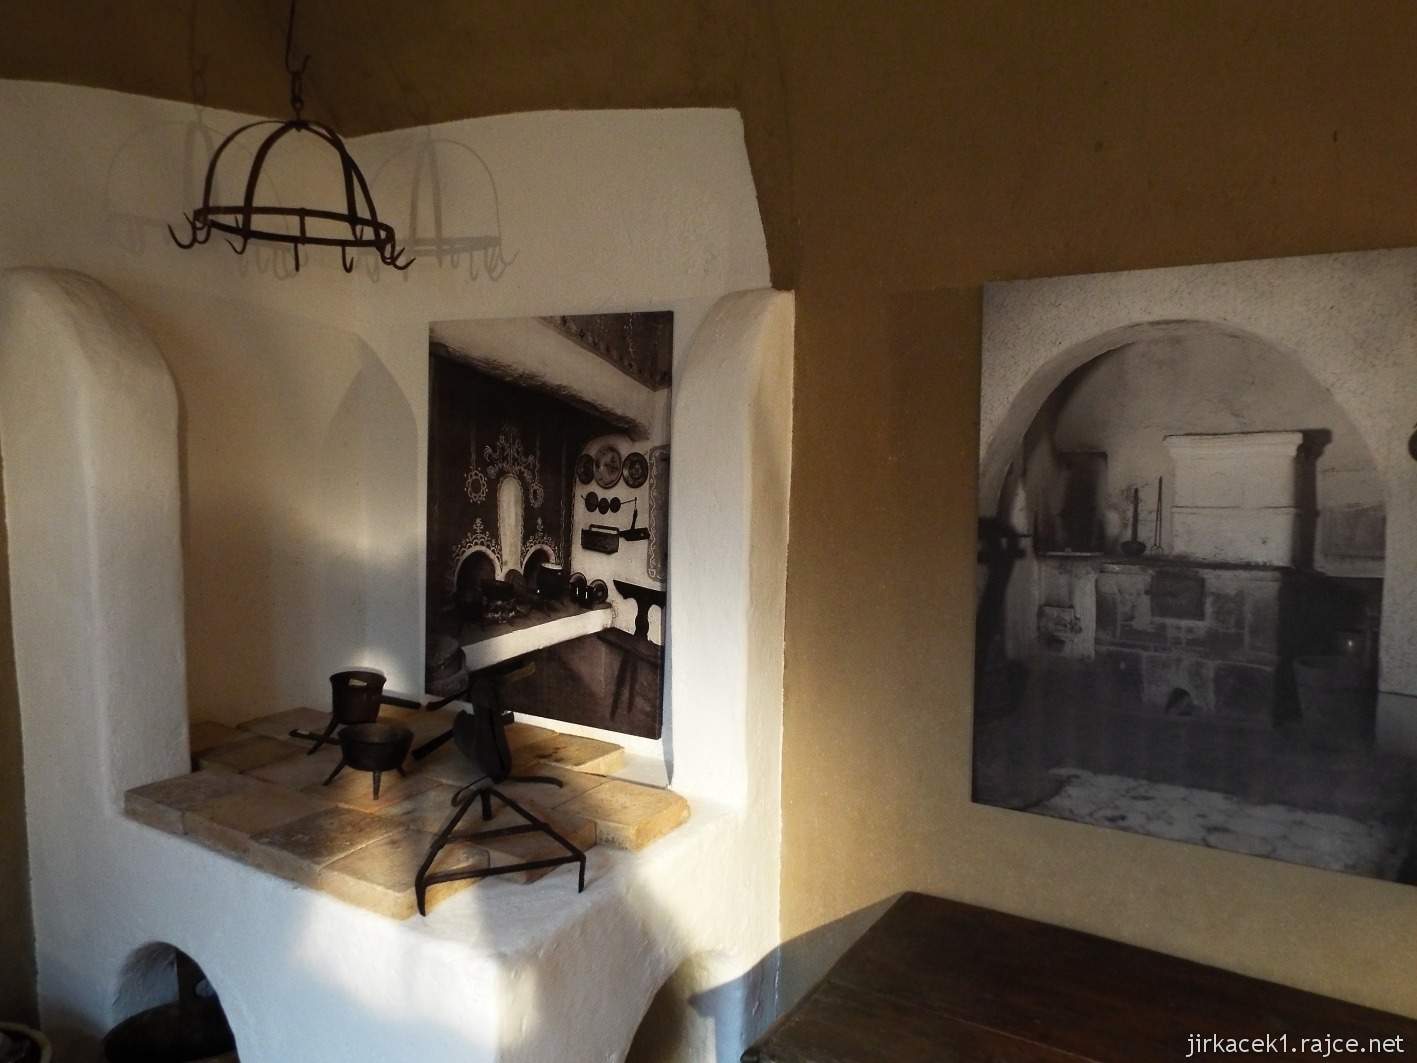 11 - Žarošice - muzeum 17 - expozice bydlení - černá kuchyně